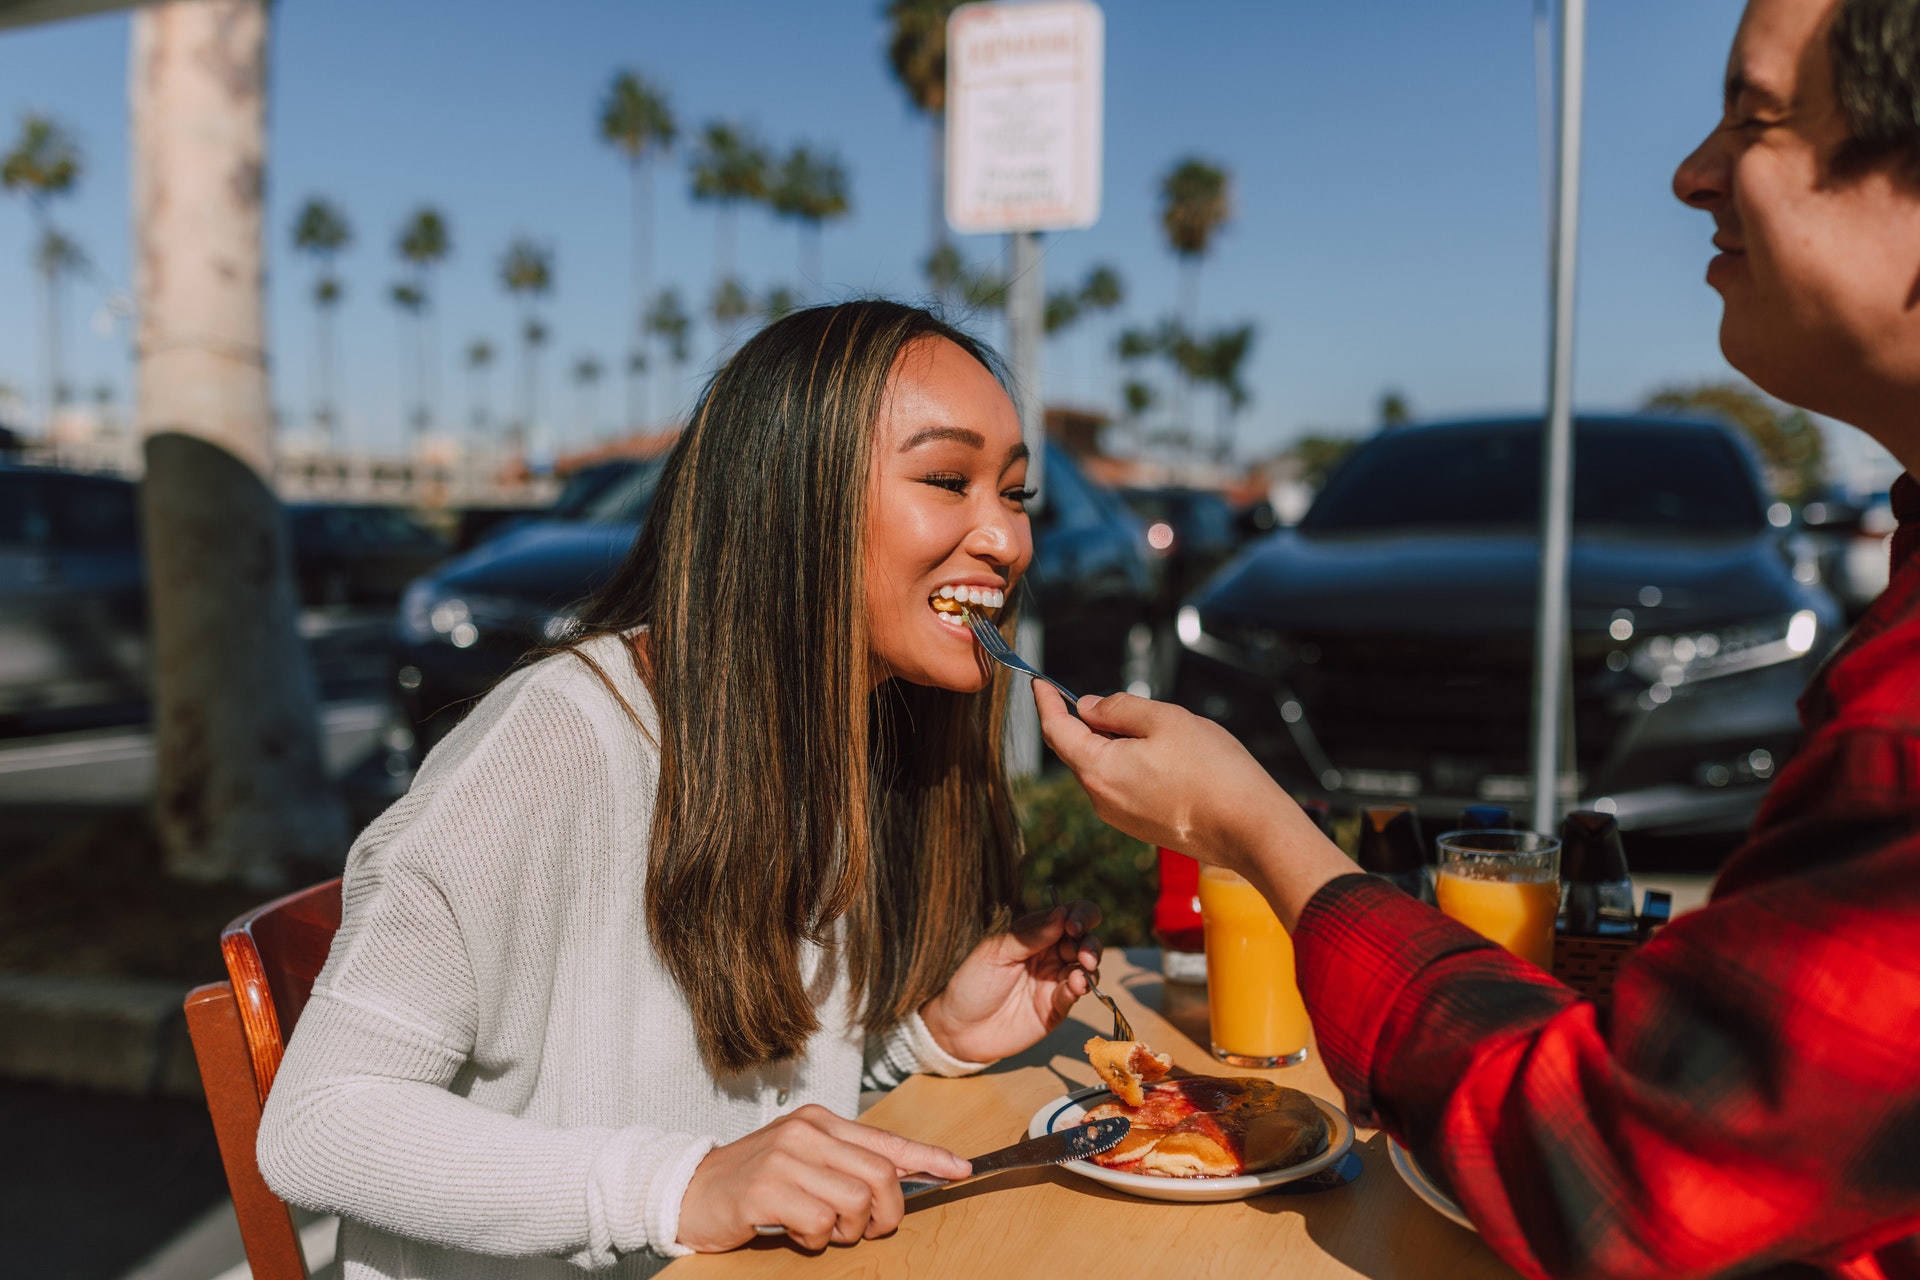 Vemos um homem dando comida na boca de uma mulher em uma espécie de encontro de casal (imagem ilustrativa). Texto: franquia açaí concept.